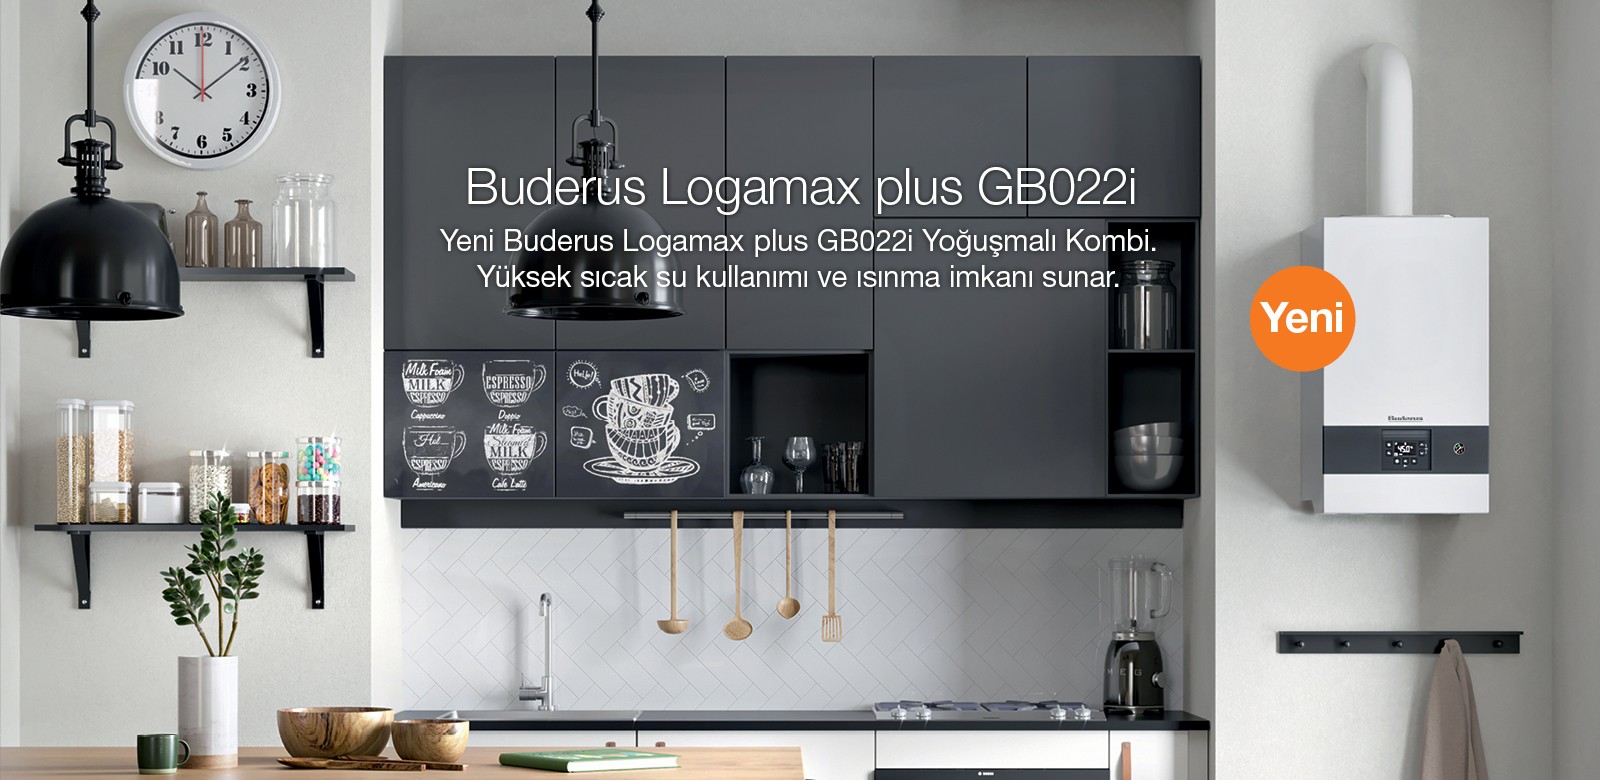 Logamax plus GB022i